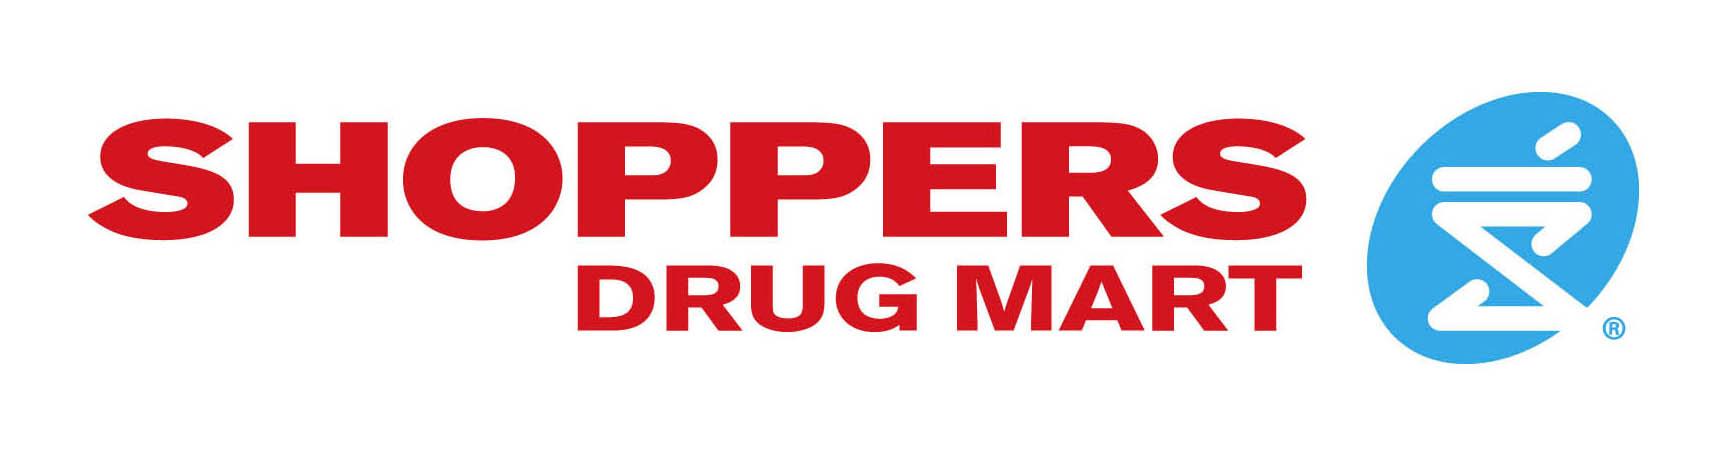 Image result for shoppers drug mart logo